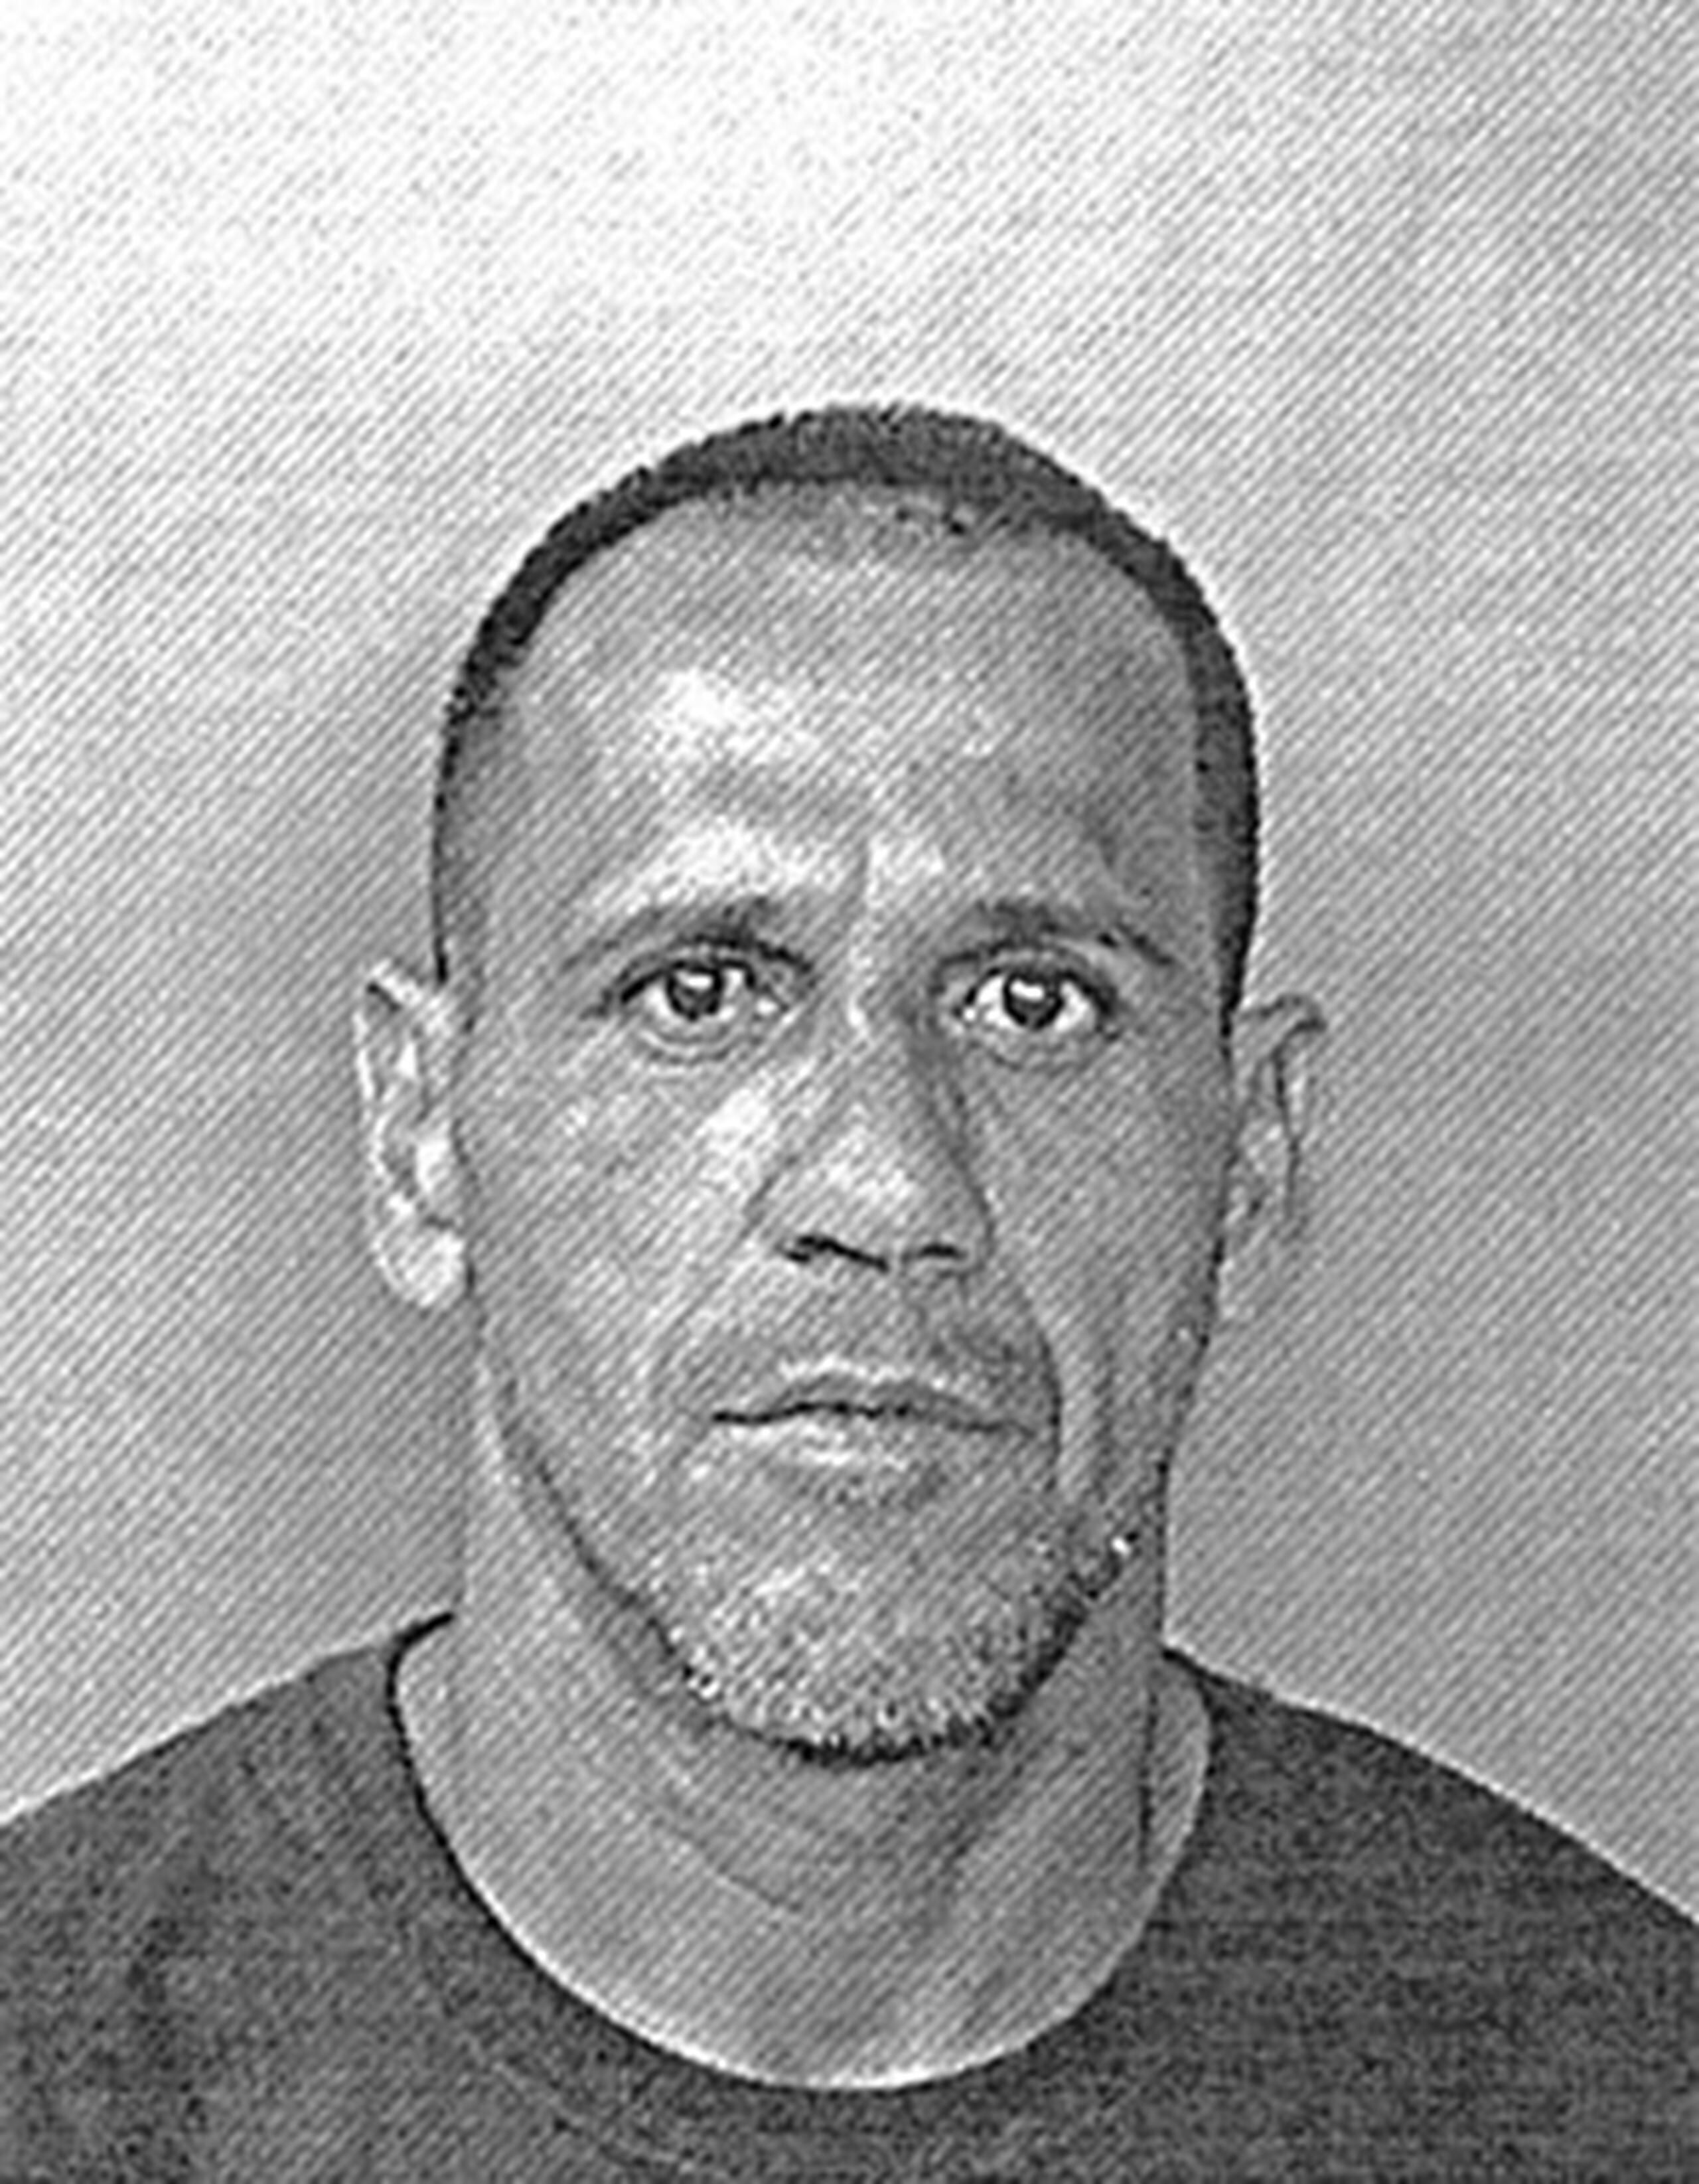 Si has sido víctima de Miguel A. Cruz Ortiz, alias Calabaza, comunícate con la Policía de Puerto Rico al (787) 793-1234, ext. 3155